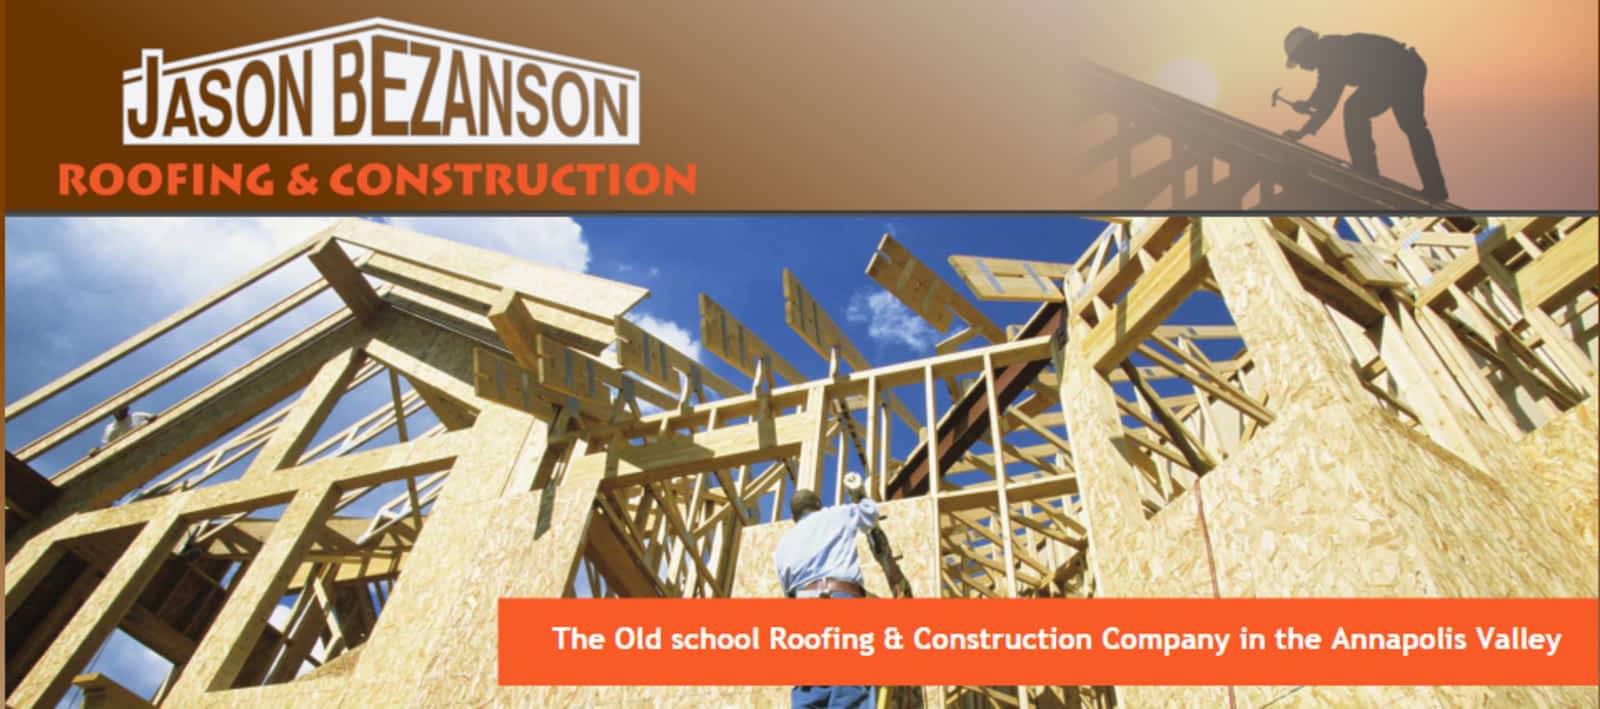 Jason Bezanson Roofing-Constr 9594 S Samerton, Kingston Nova Scotia B0P 1R0